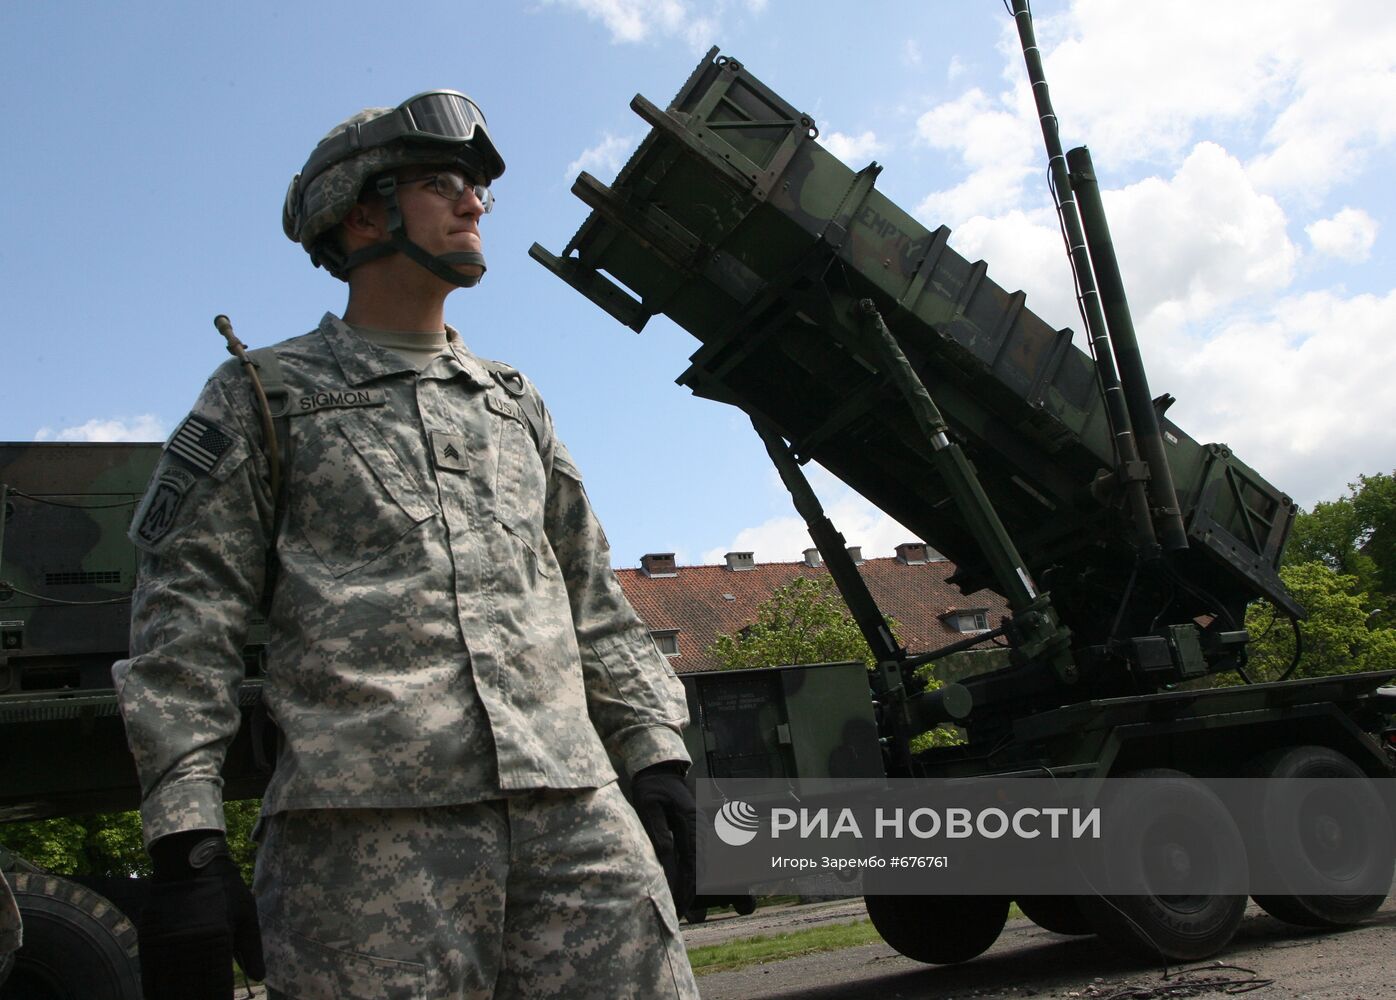 Американские ракеты Patriot размещены в Польше